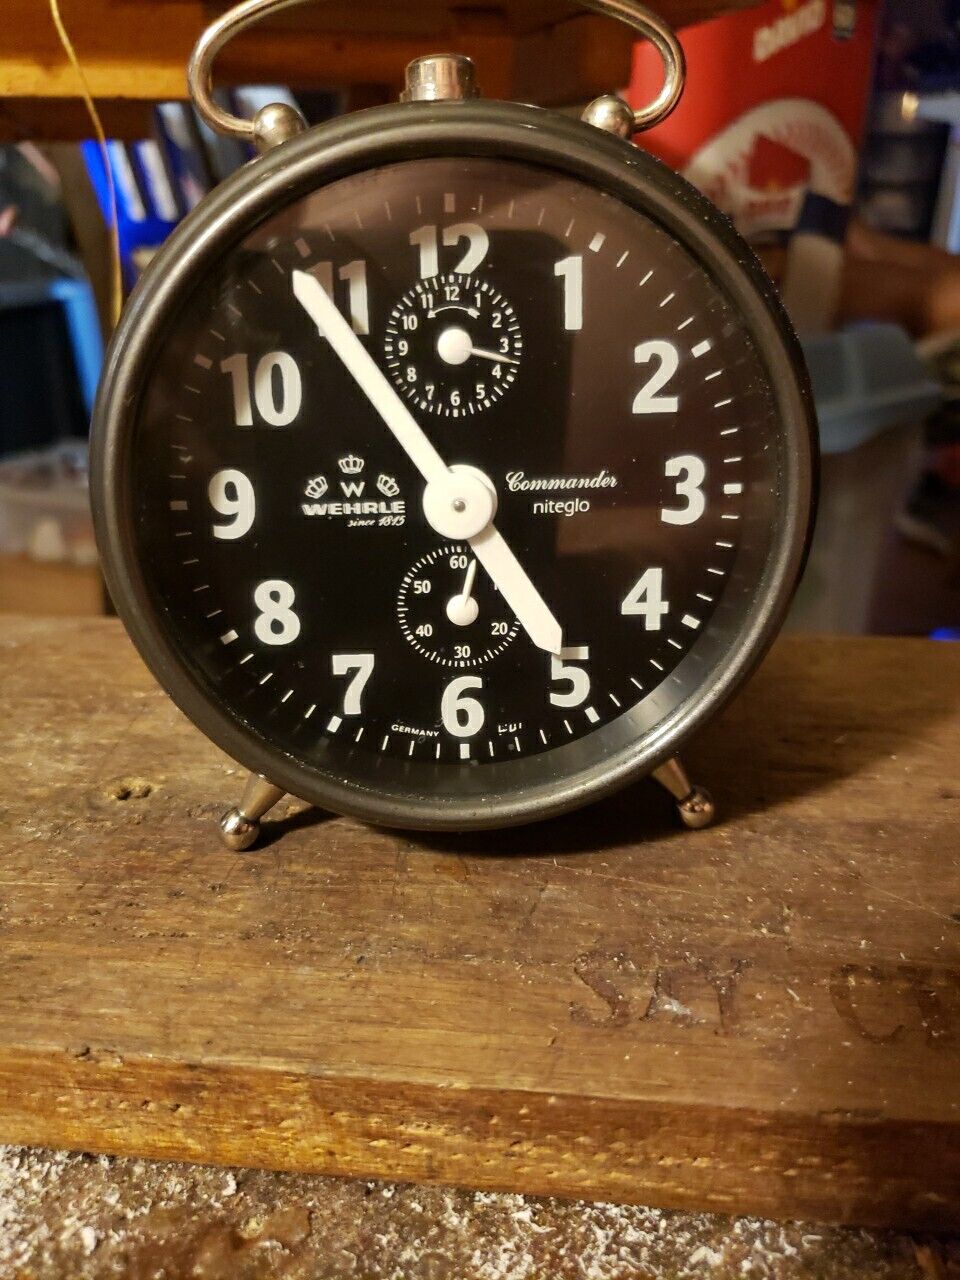 WEHRLE Commander Niteglo Alarm Clock Made In Germany